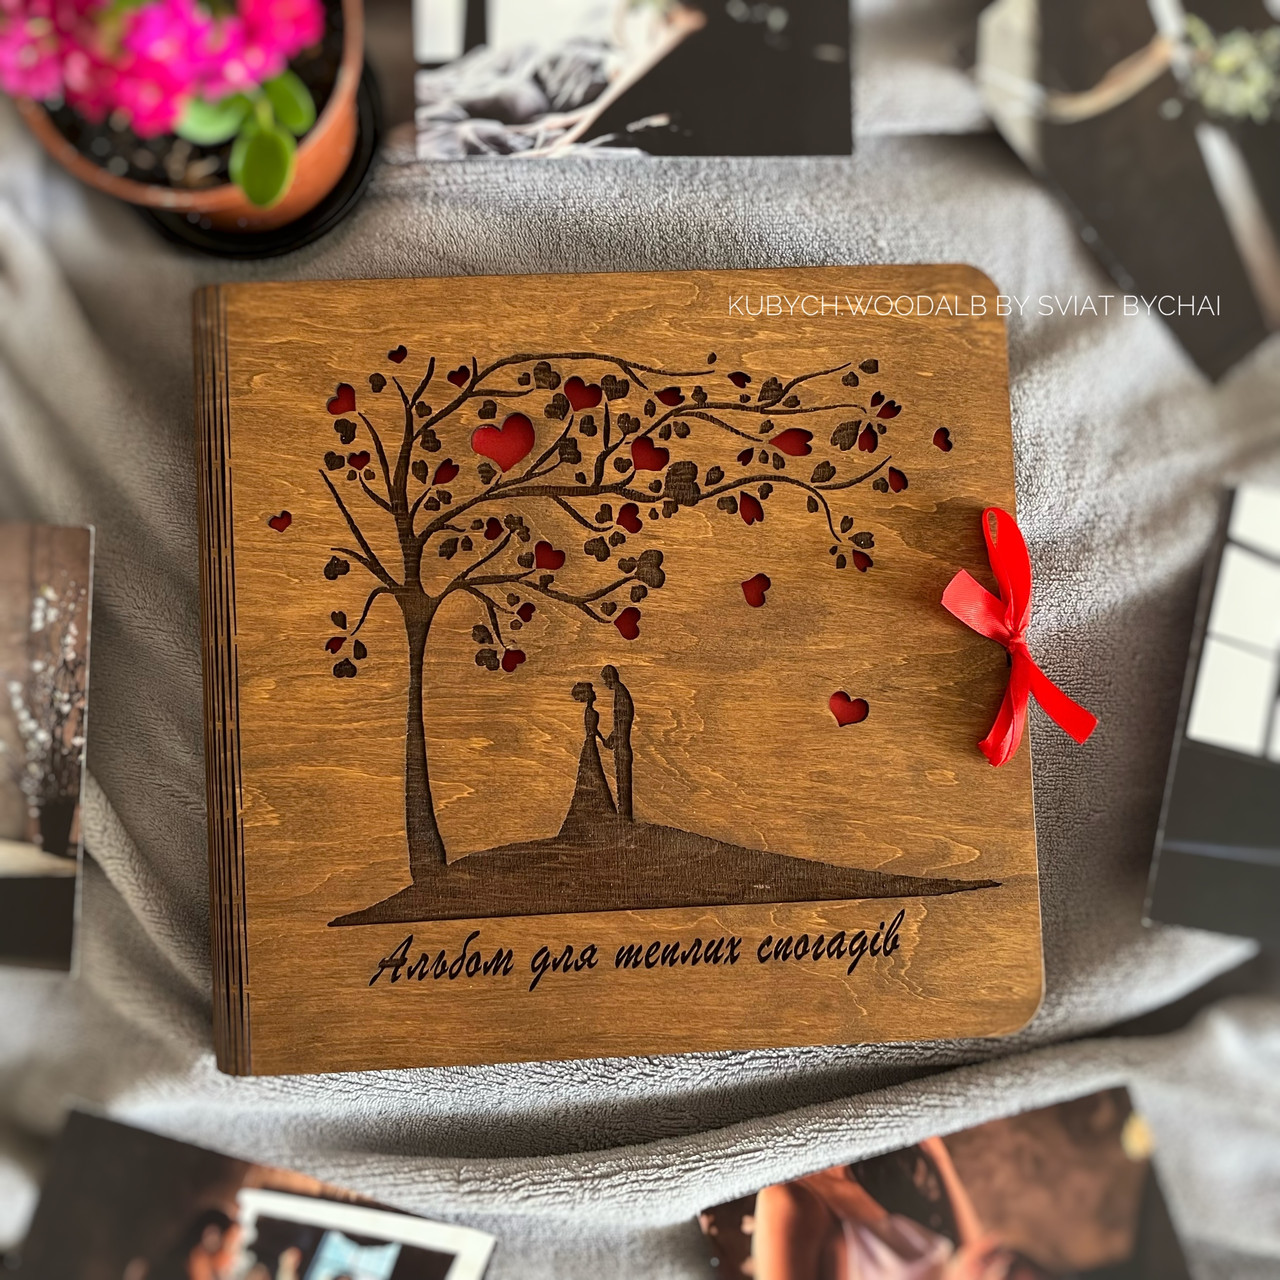 Дерев'яний альбом для фото з парою, деревом, сердечками — подарунок на весілля, ювілей стосунків